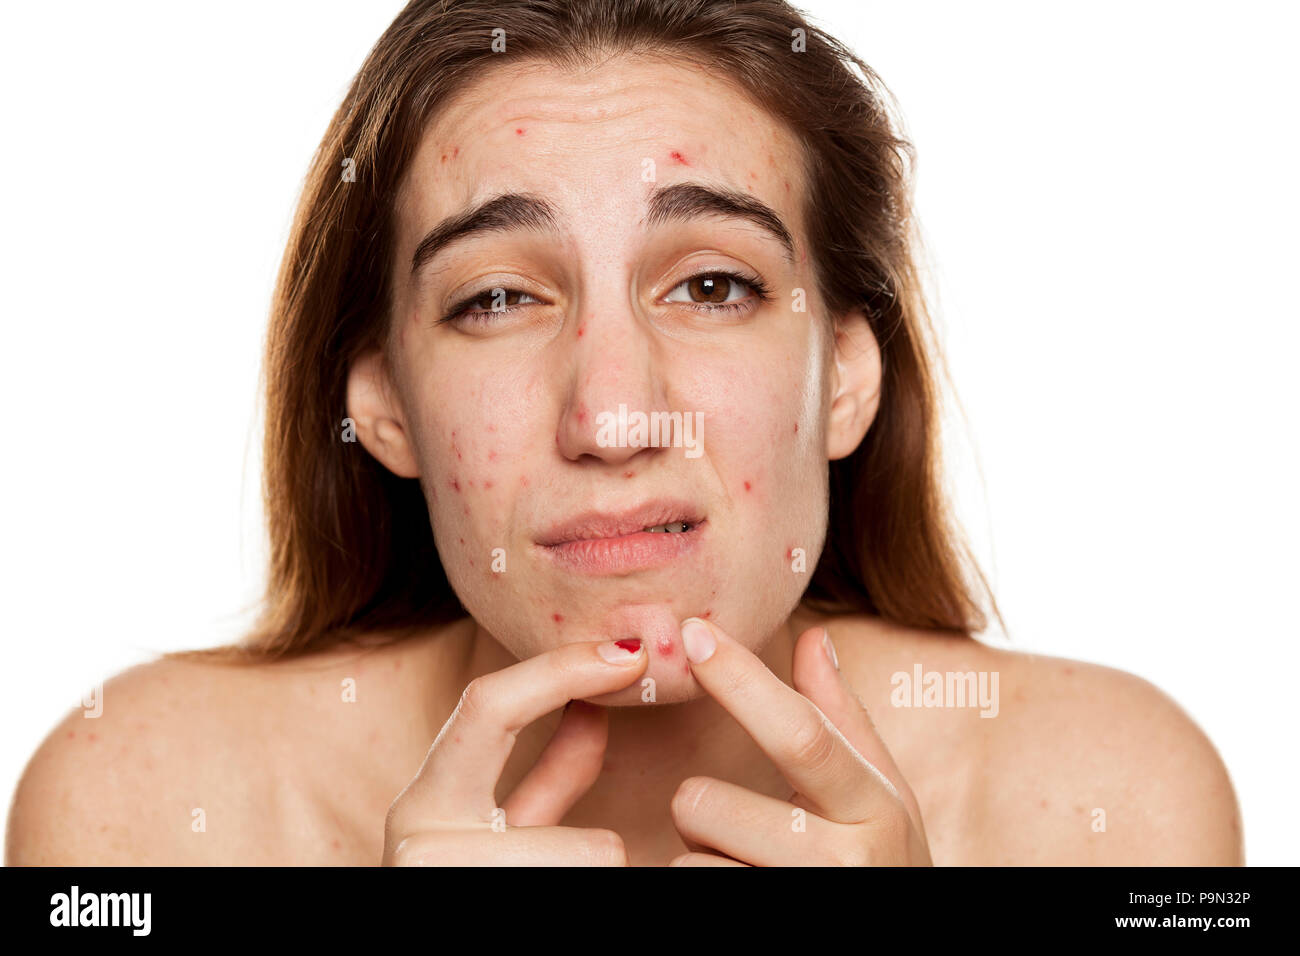 Junge Ungluckliche Frau Mit Problematischer Haut Und Ohne Make Up Ihre Akne Pressung Auf Weissem Hintergrund Stockfotografie Alamy